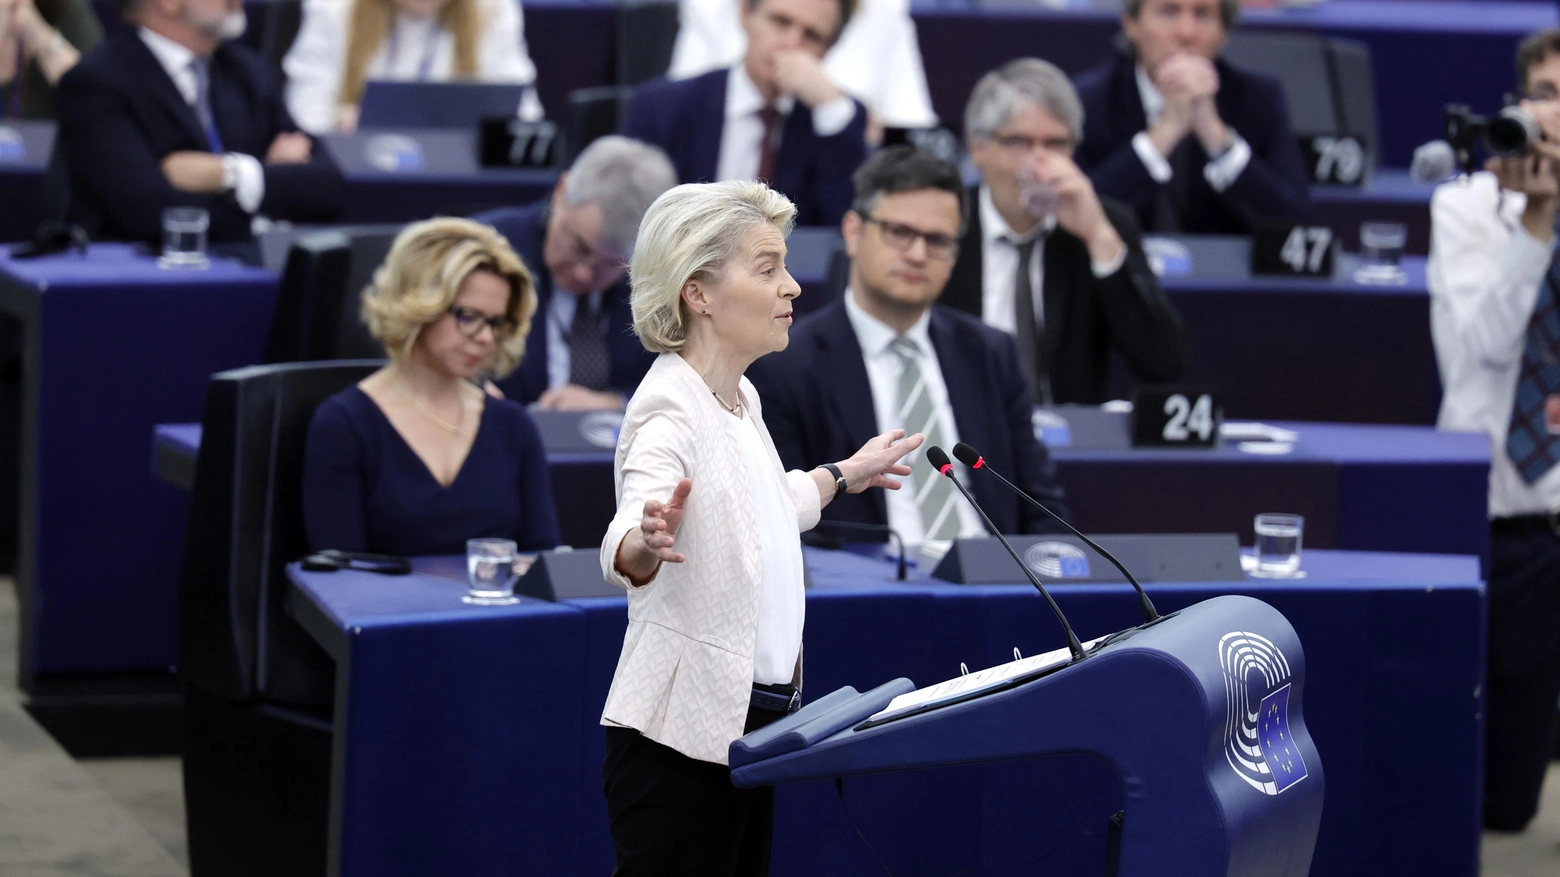 L'attuale presidente della Commissione europea punta alla rielezione